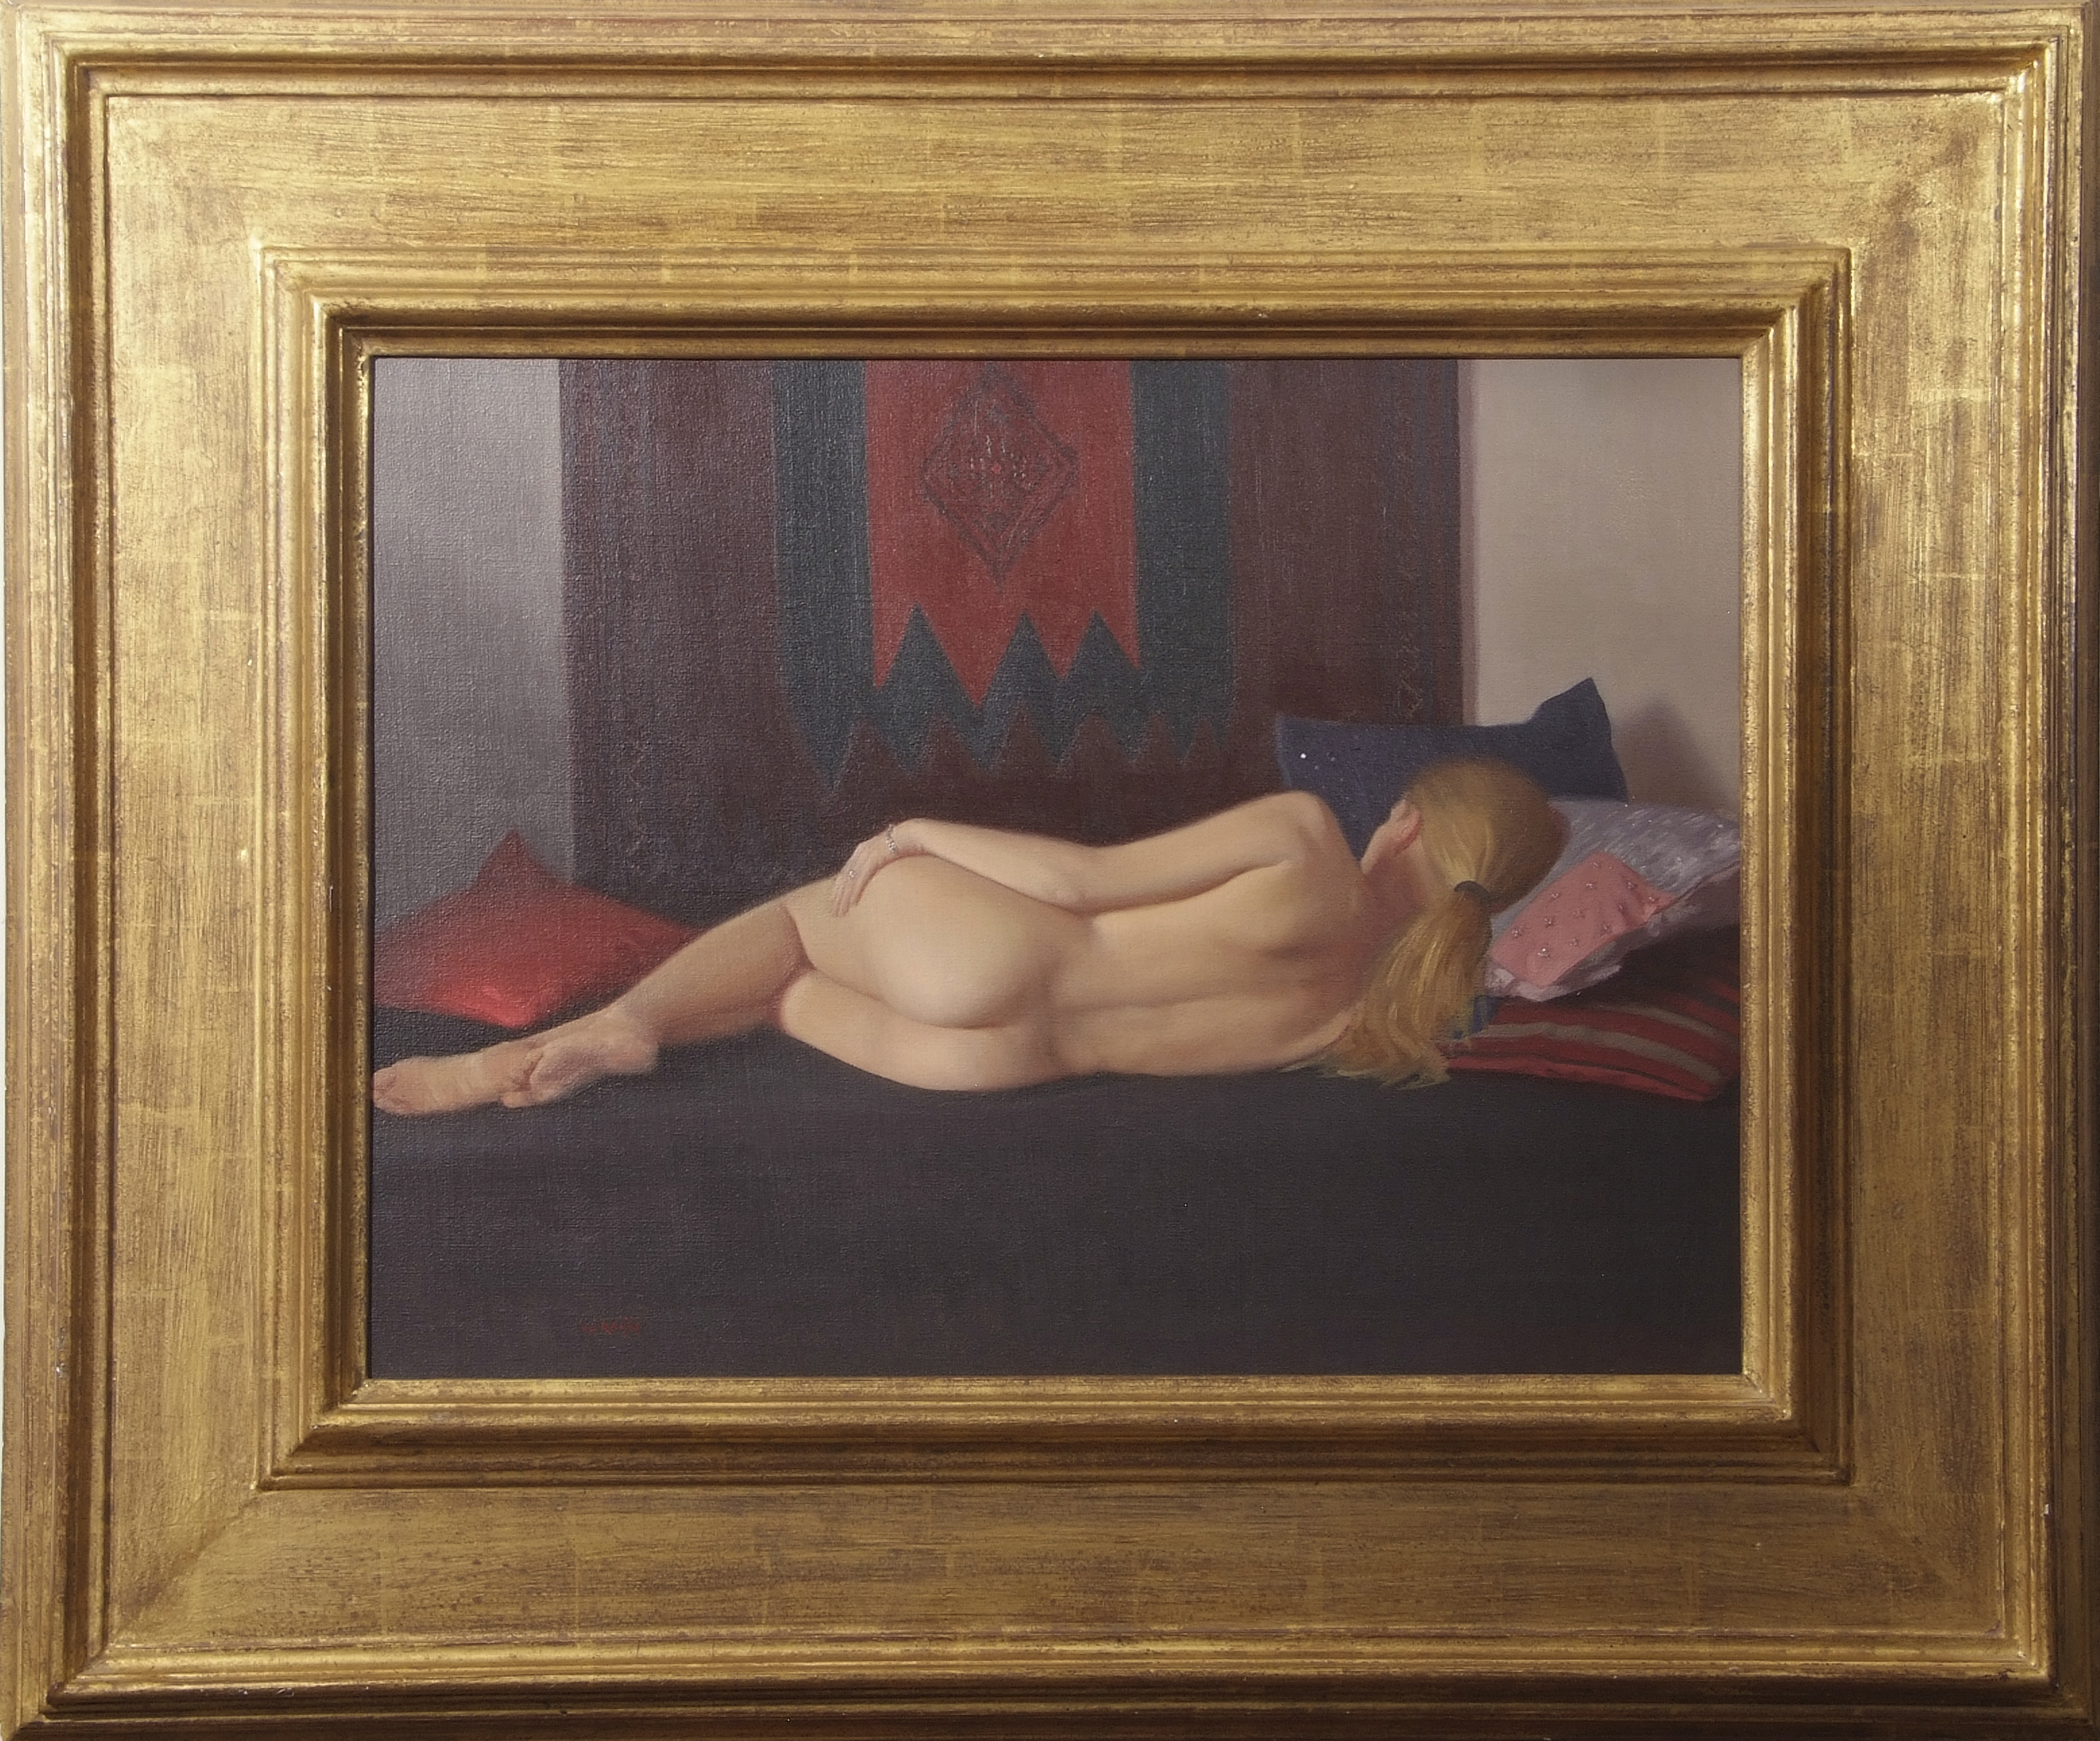 •AR Robbie Wraith, RP (born 1952), "Silvia", oil on canvas, signed lower left, 45 x 60cm.